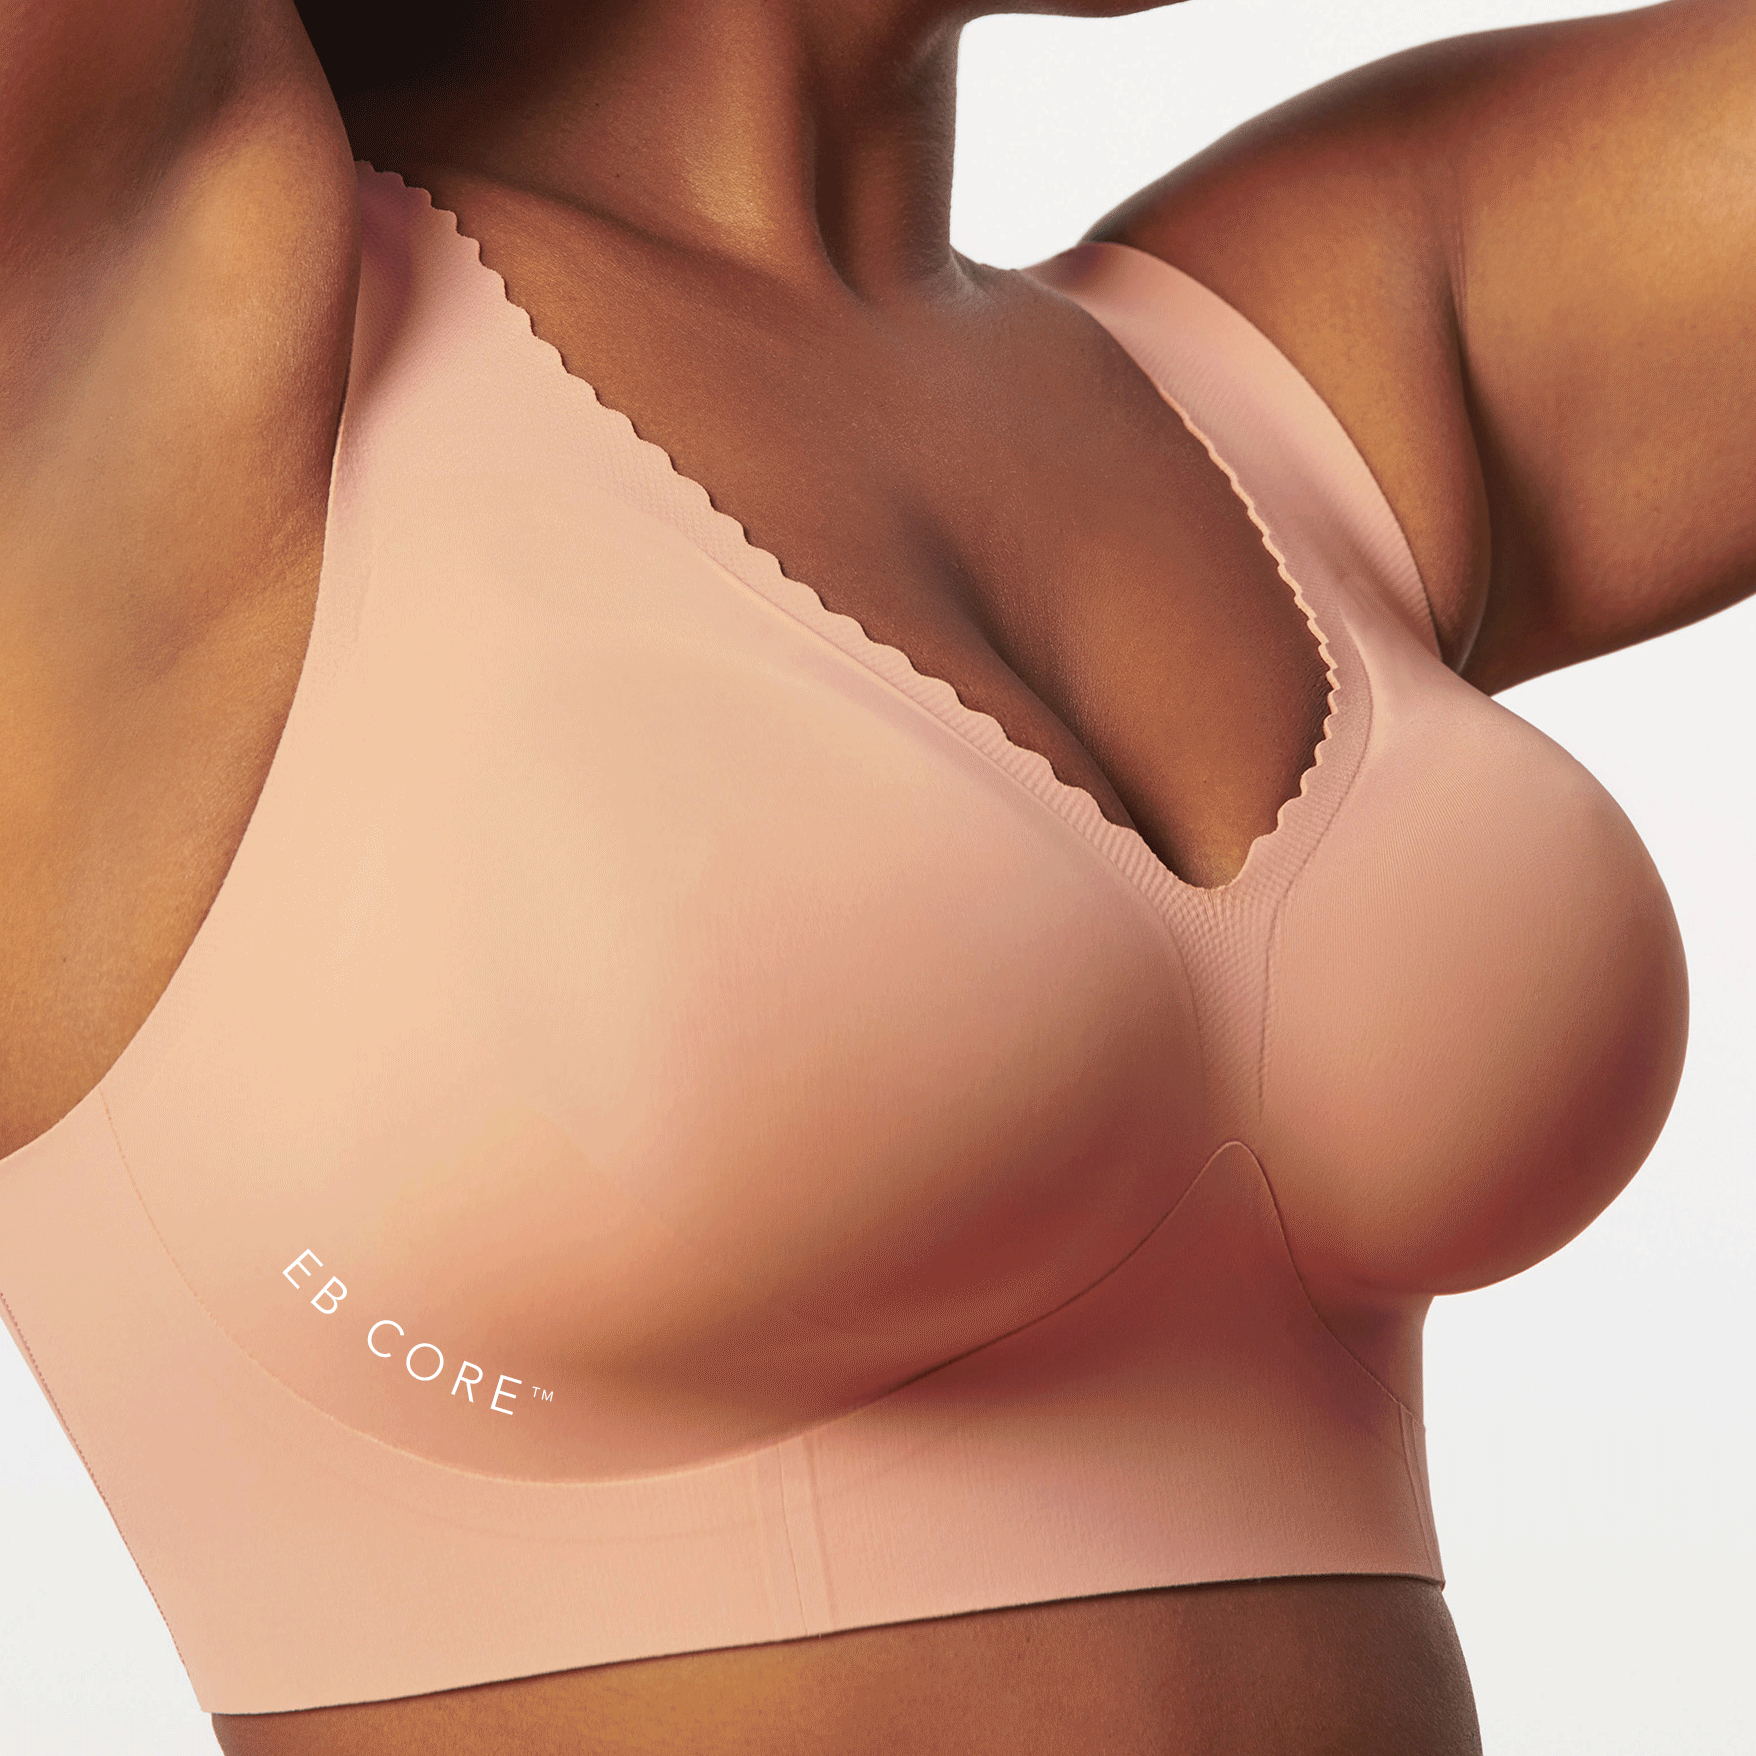 Average bra size - GIPHY Clips